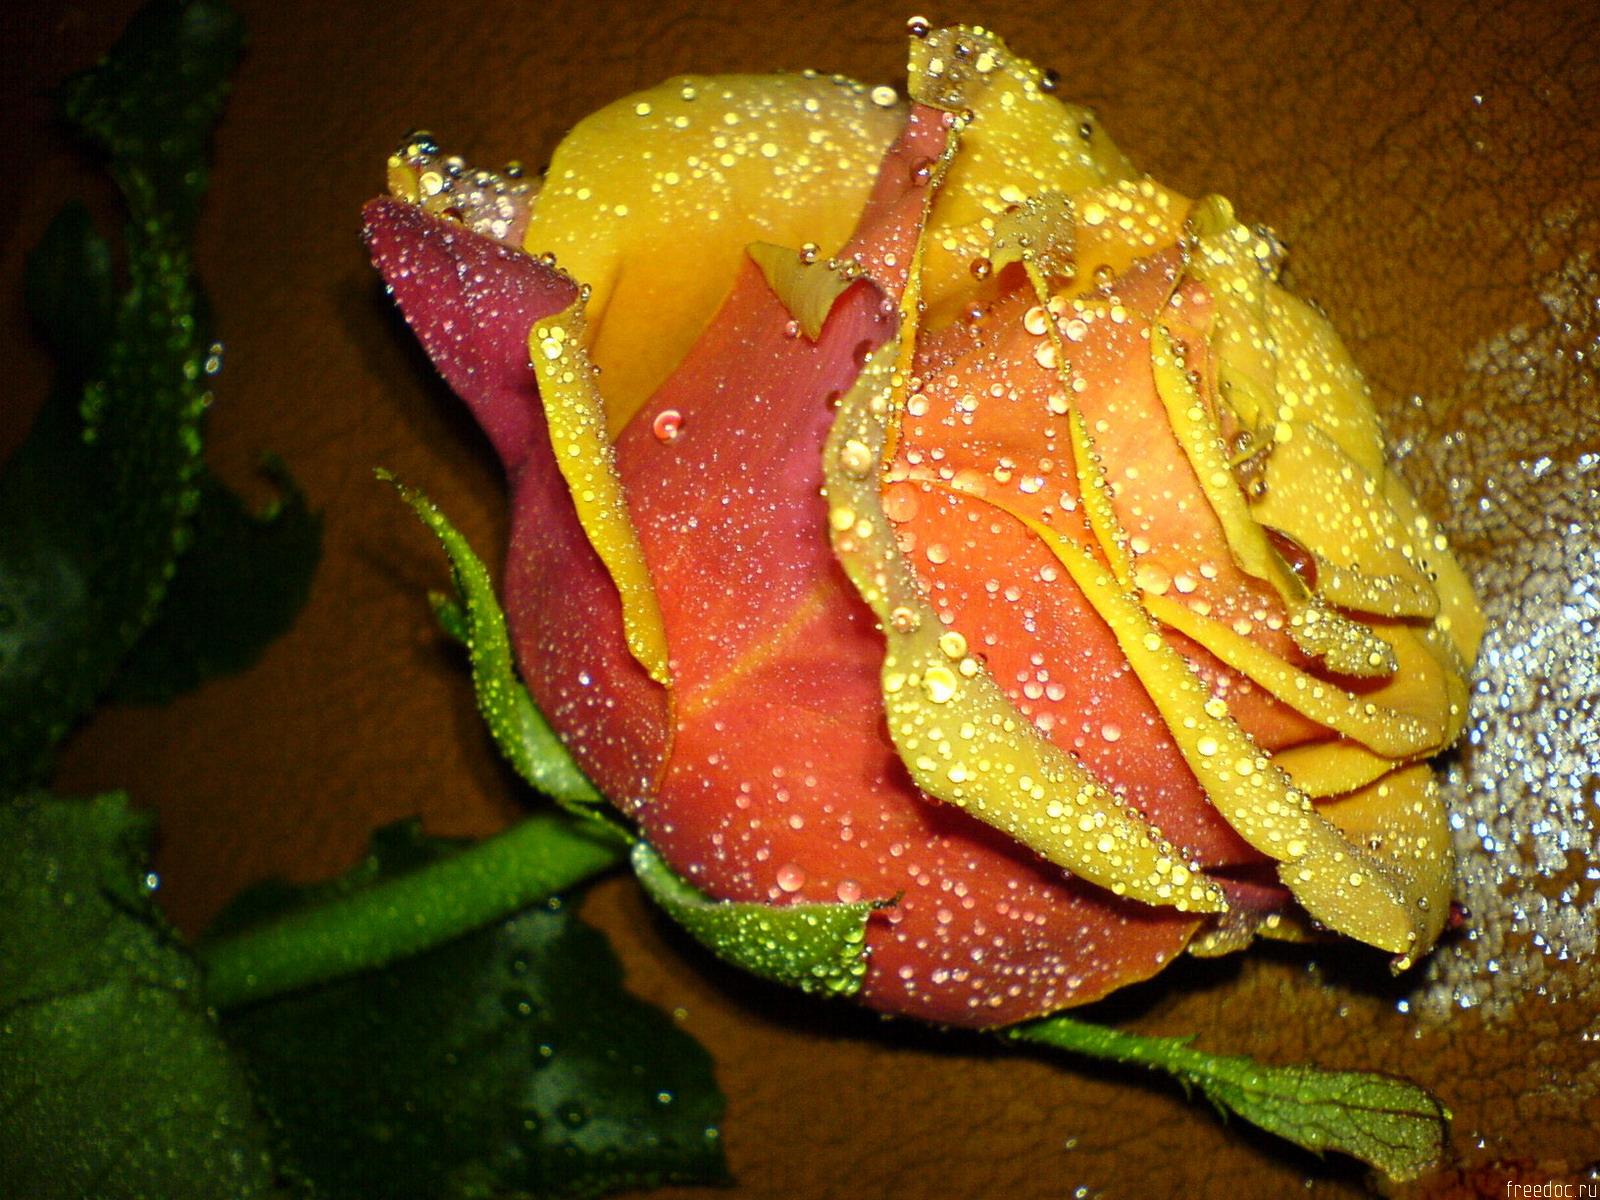 Rose Flowers Wallpaper Beautiful Of Roses